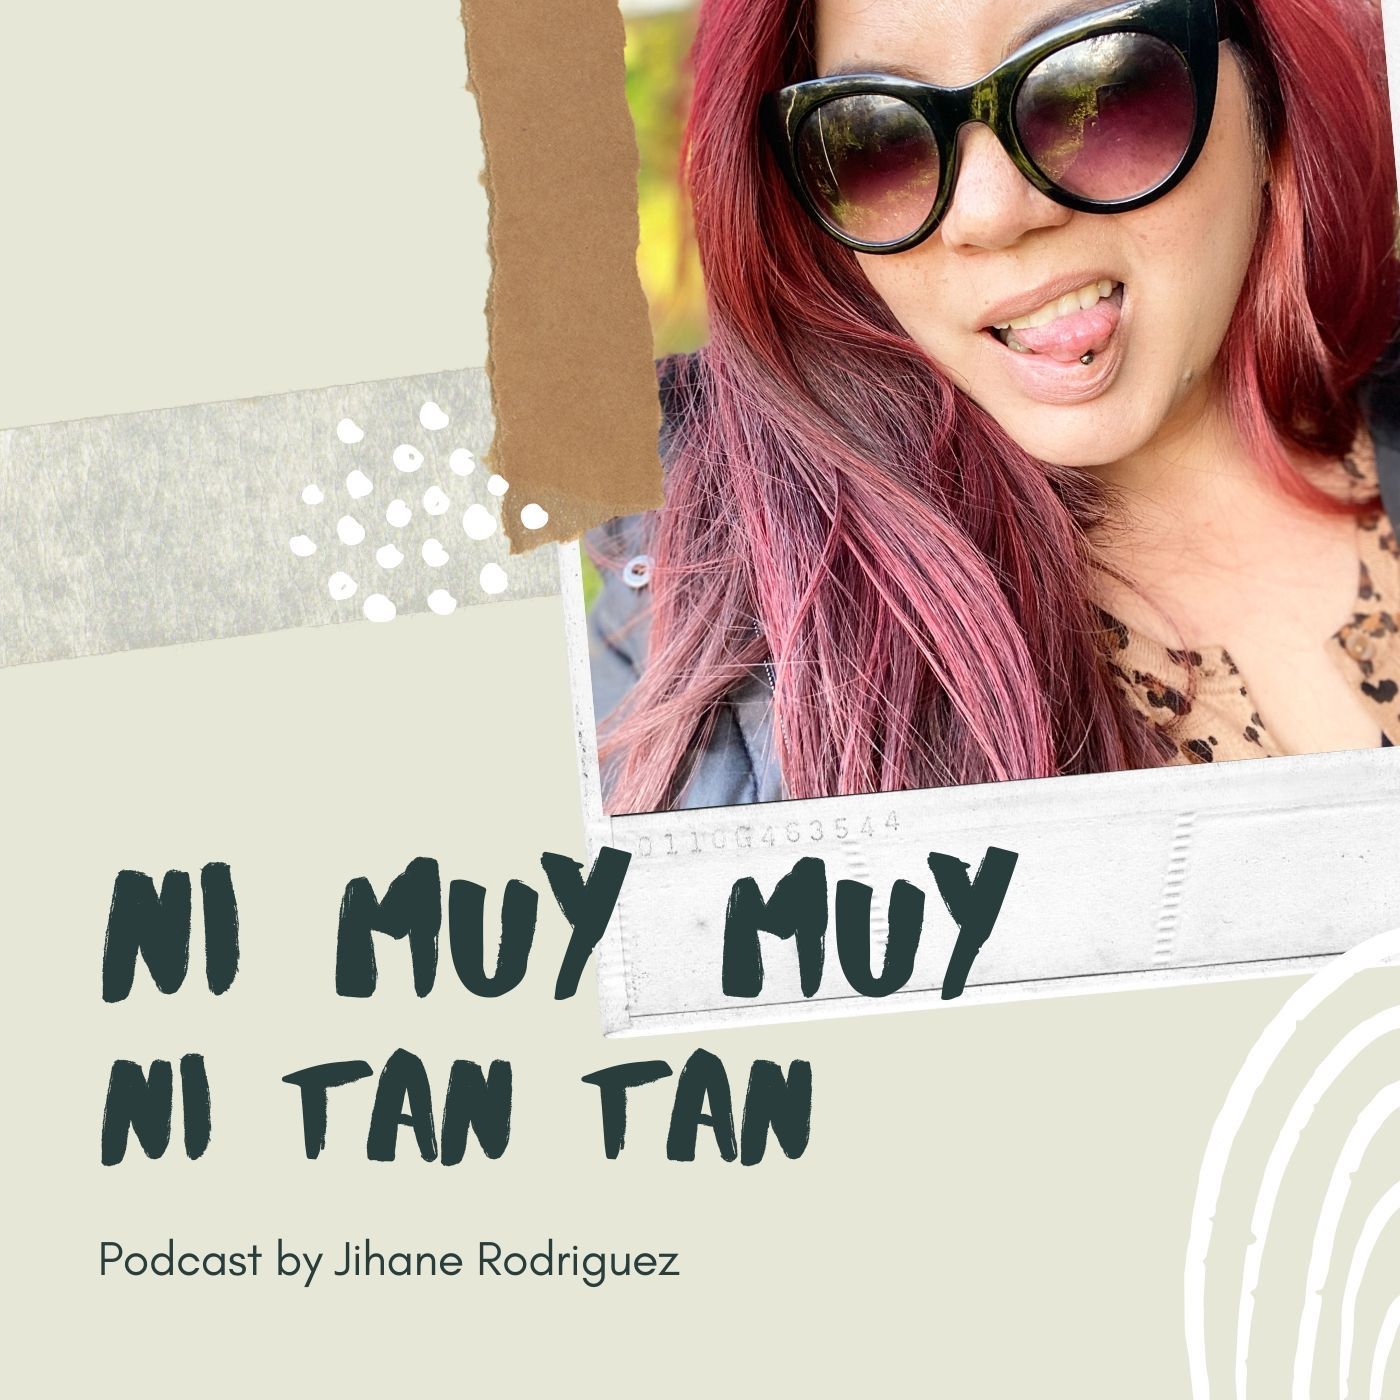 Episode 4 - Ni Muy Muy, Ni Tan Tan | Coloquialismos, modismos y demás “ismos” del idioma